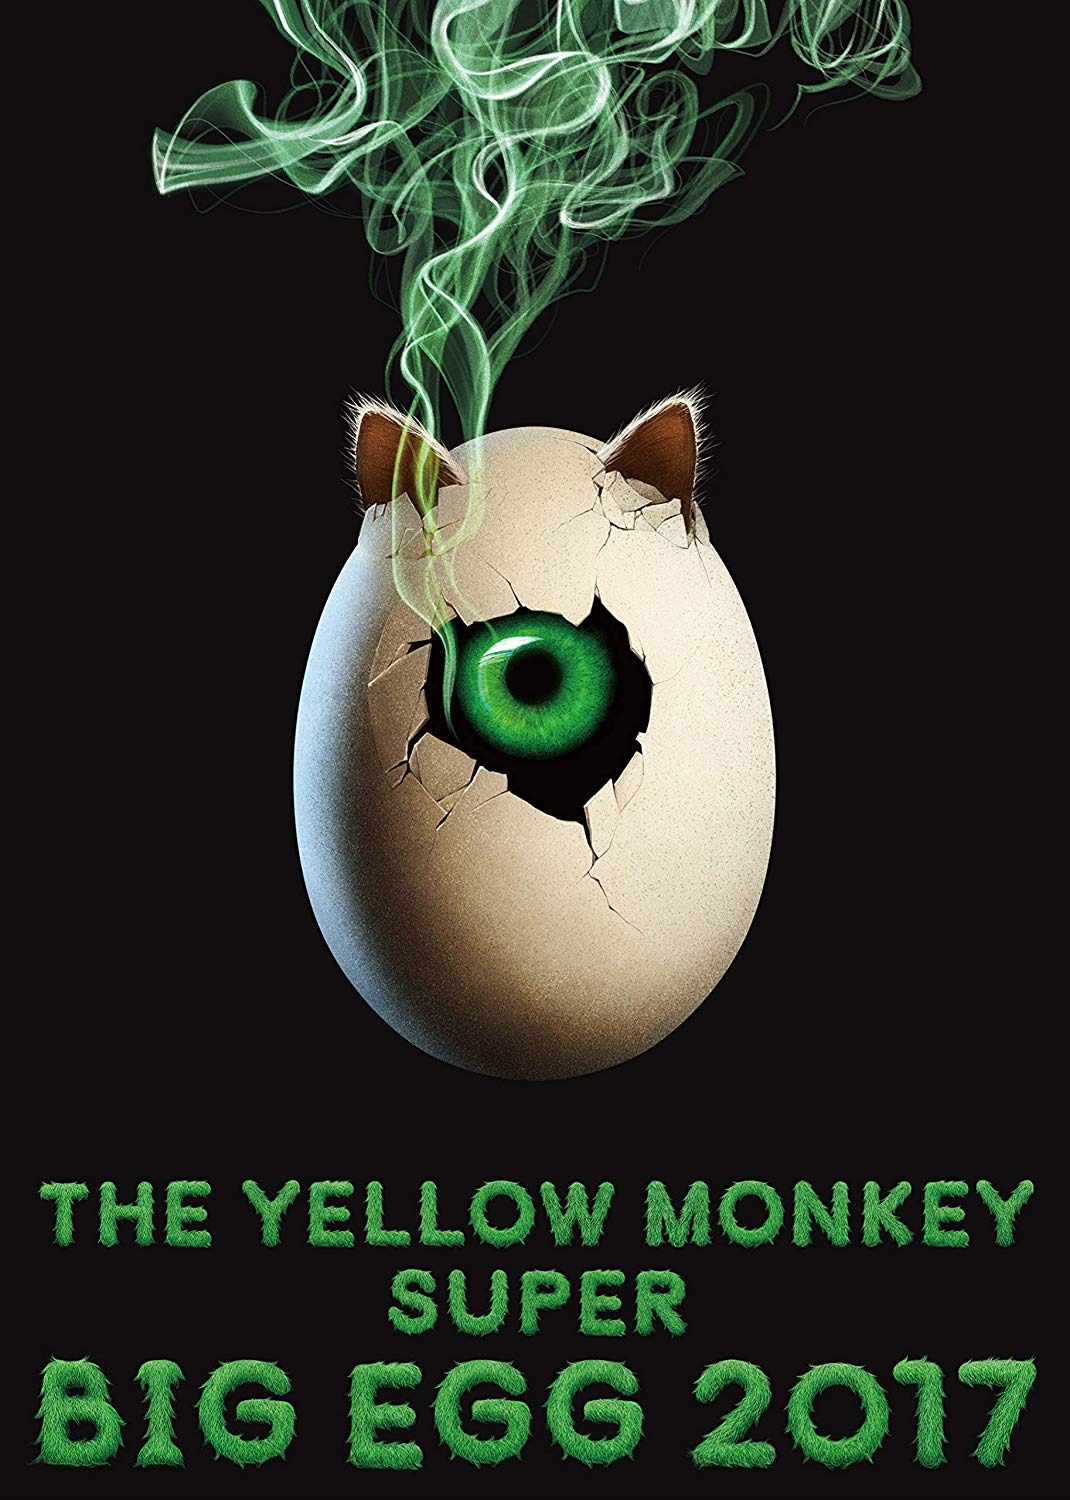 Music Blu-Ray Yellow Monkey (The) - Super Big Egg 2017 NUOVO SIGILLATO, EDIZIONE DEL 02/08/2019 SUBITO DISPONIBILE